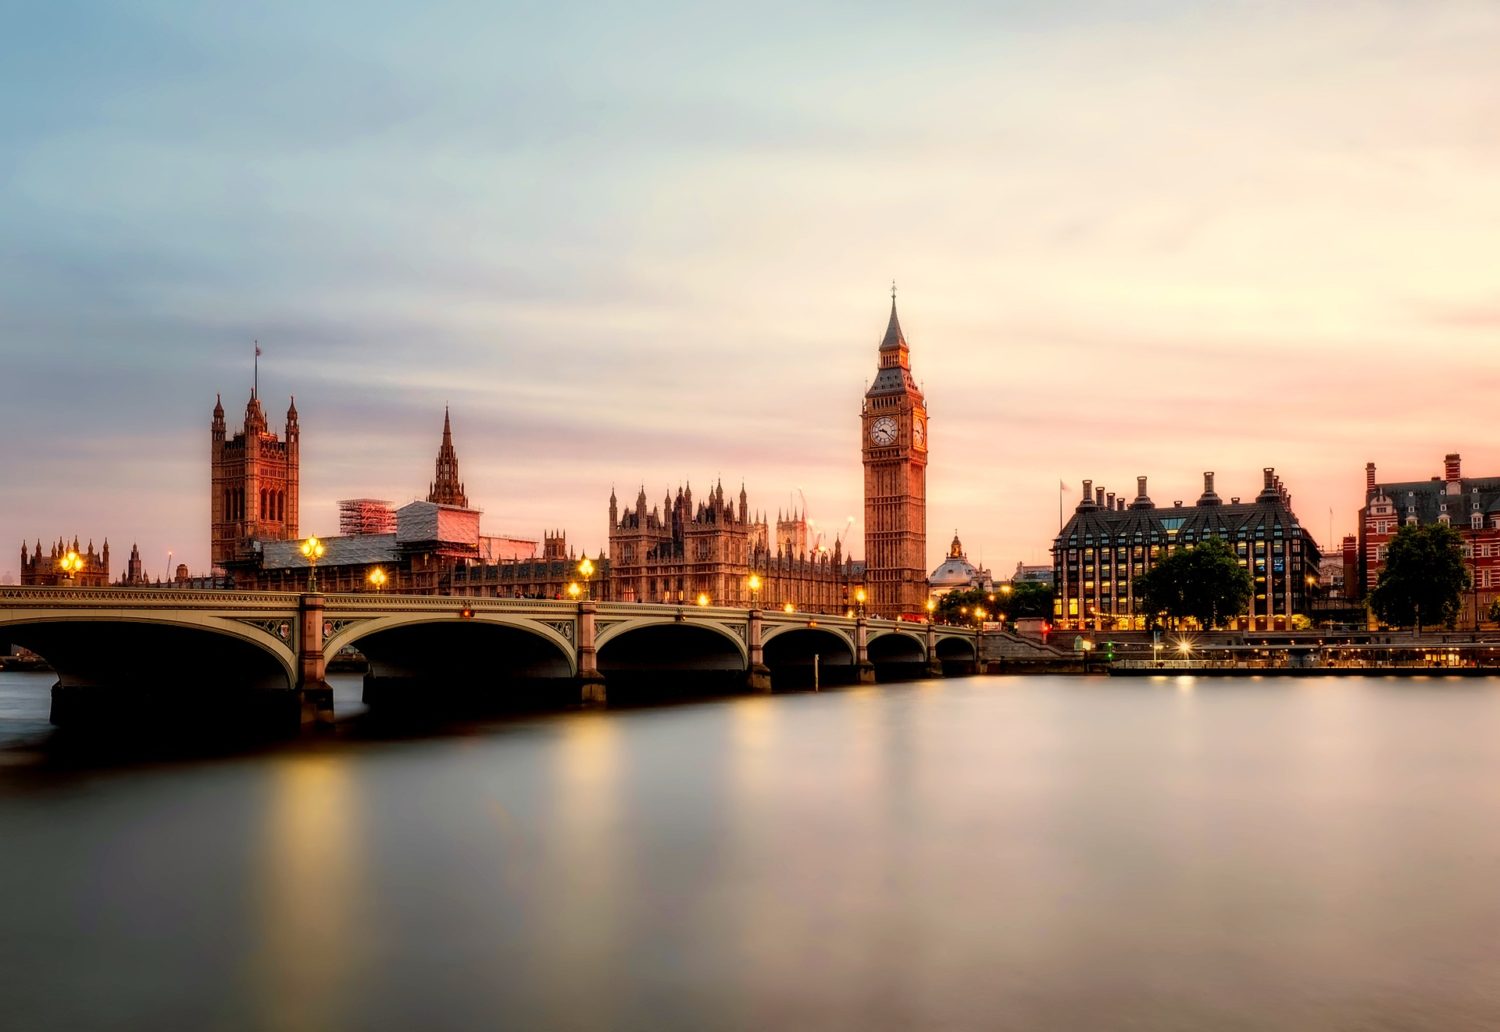 Big Ben ao fundo de paisagem no rio Tâmisa em Londres Pontos Turísticos. Foto de David Mark por Pixabay